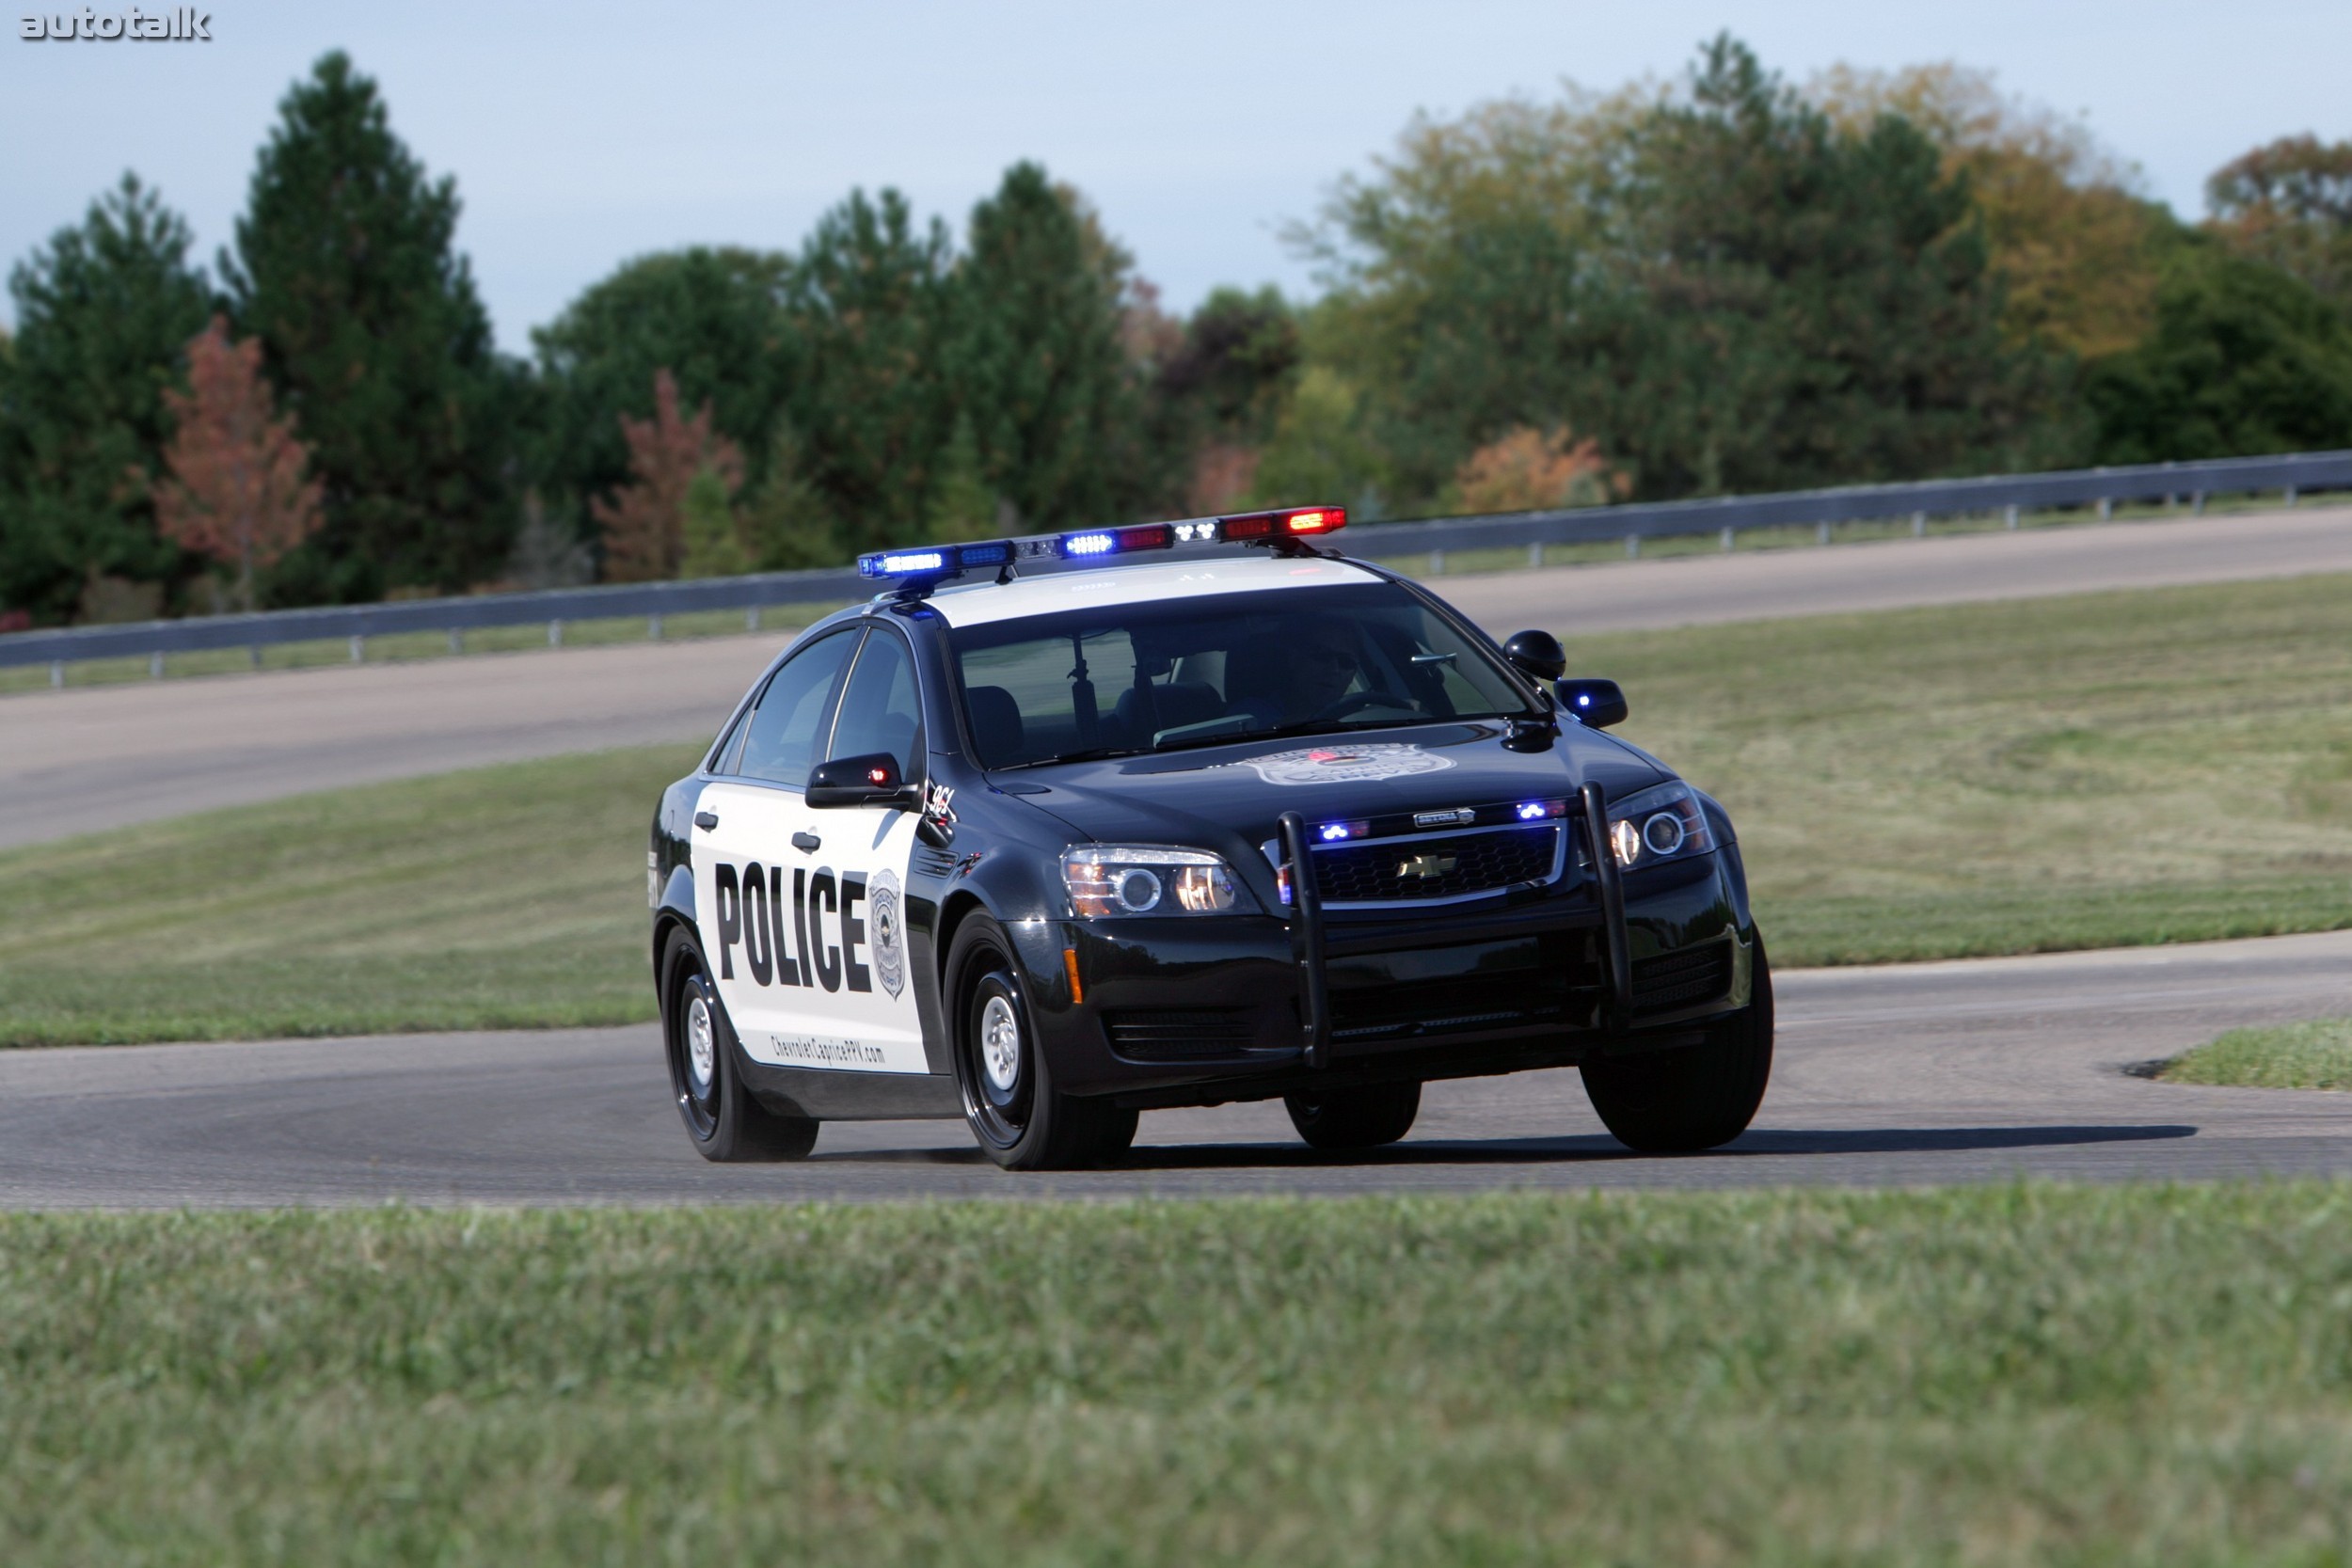 Нужны полицейские машины. Chevrolet Caprice Police 2010. Chevrolet Caprice 2011. Chevrolet Caprice 2006 Police. Chevrolet Caprice Police Patrol vehicle.